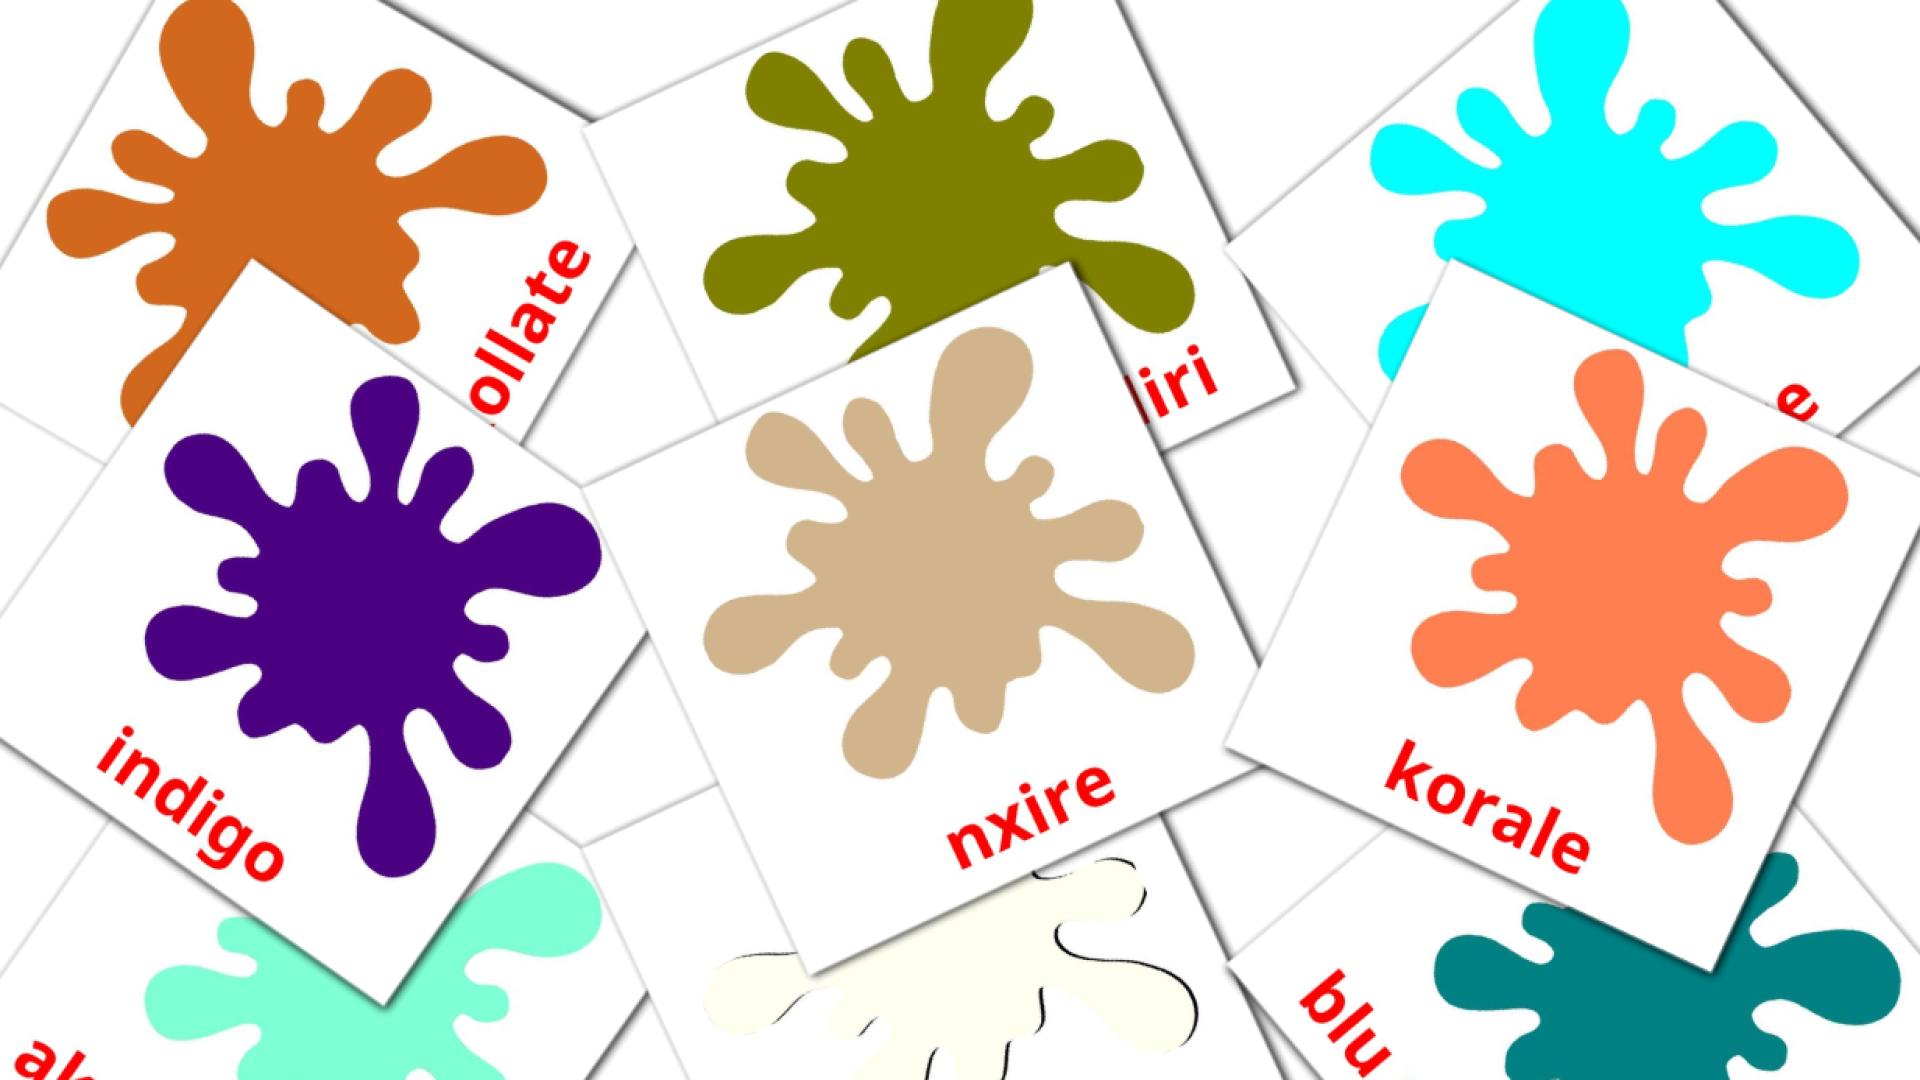 Colores secundarios - tarjetas de vocabulario en albanés